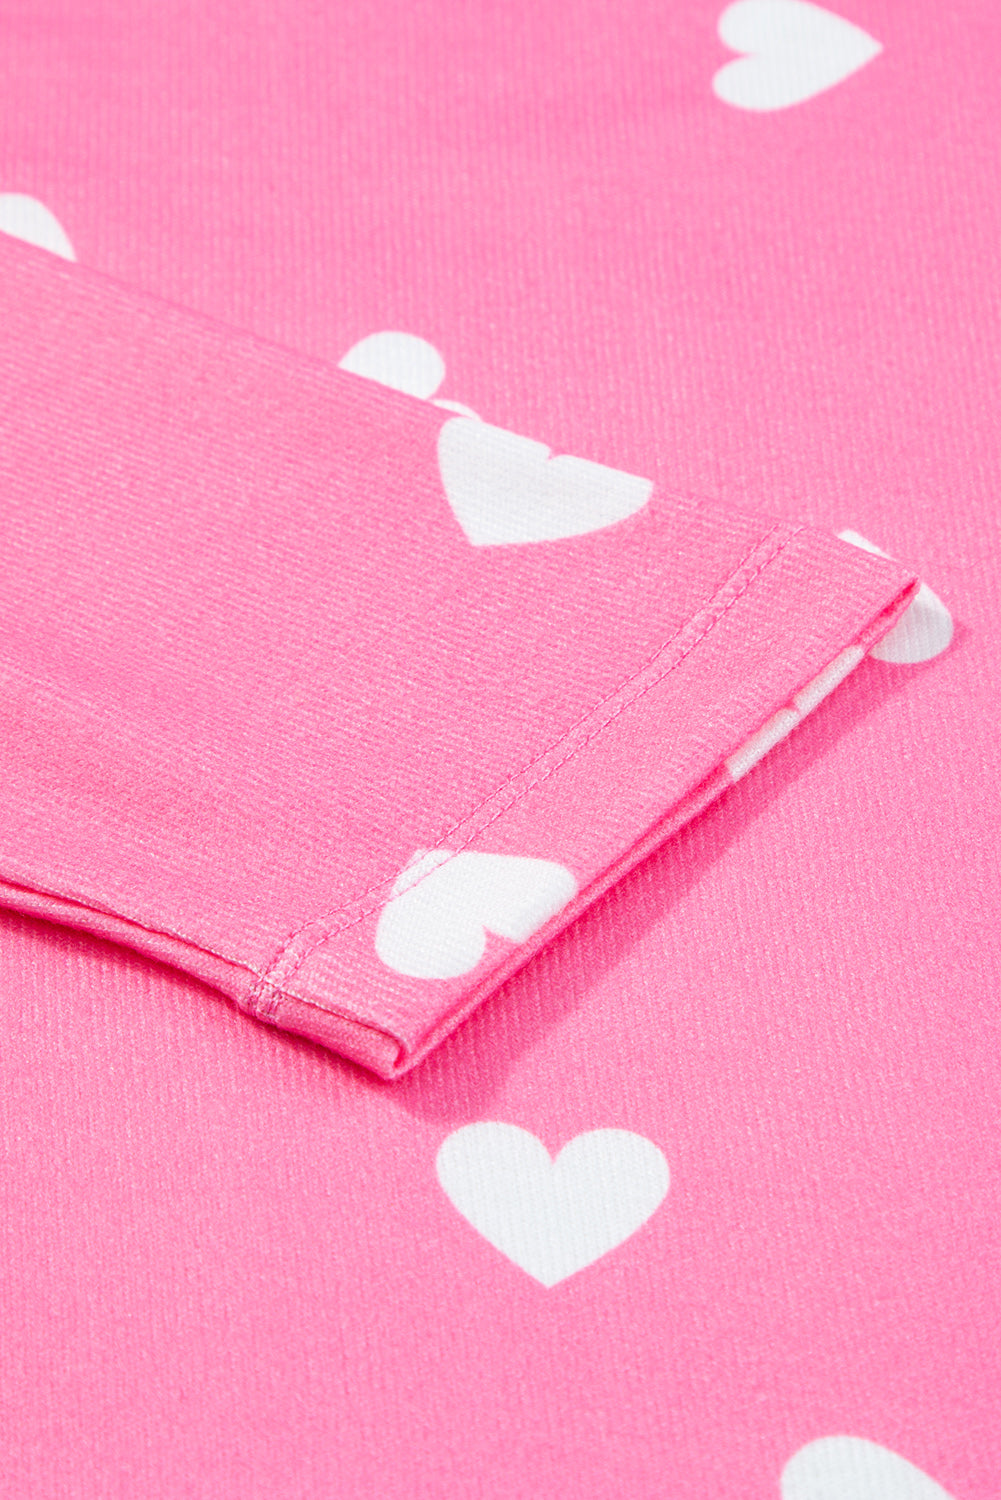 Rožnata majica z dolgimi rokavi in ​​kratkimi hlačami s potiskom srčkov za Valentinovo